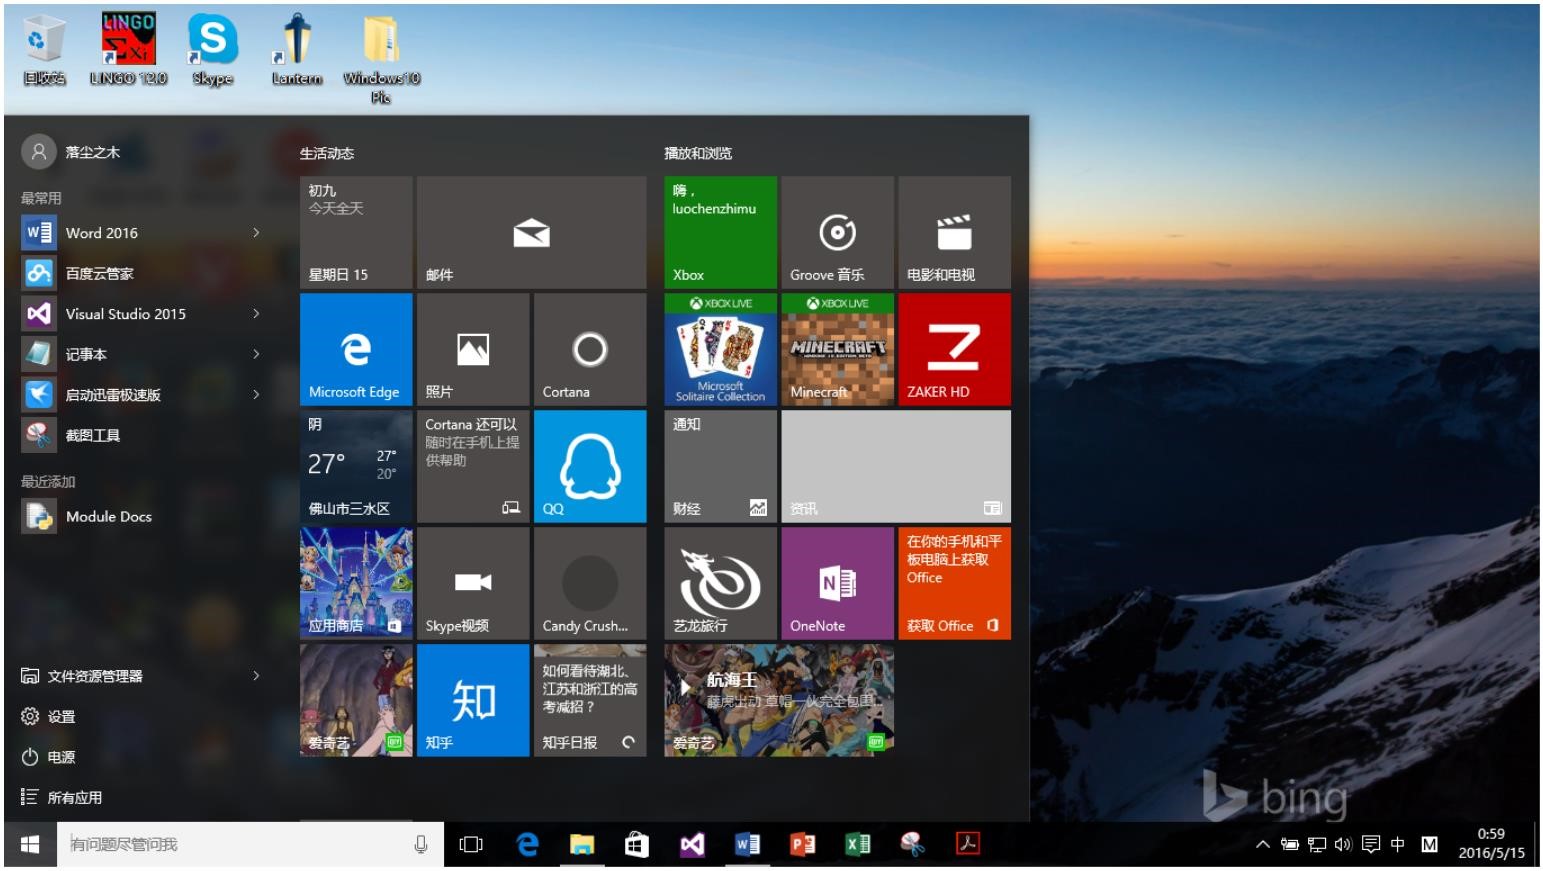 Windows10用户手册 - Windows 10 功能使用 - 开始菜单